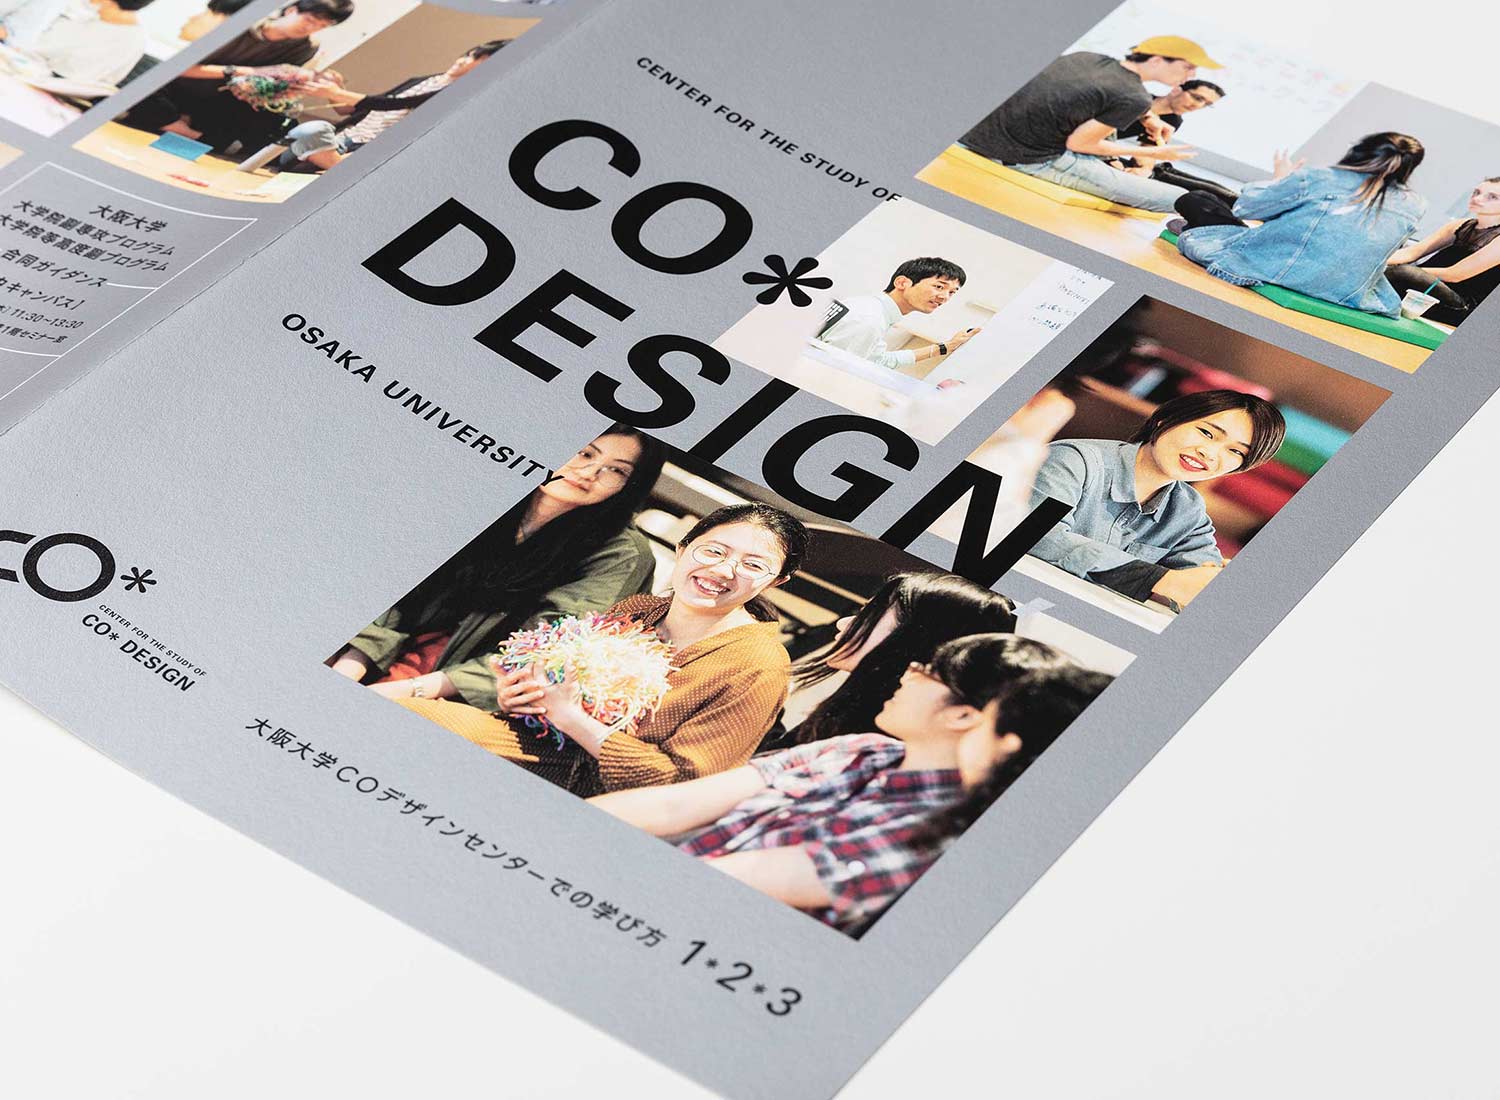 大阪大学COデザインセンター 2020年